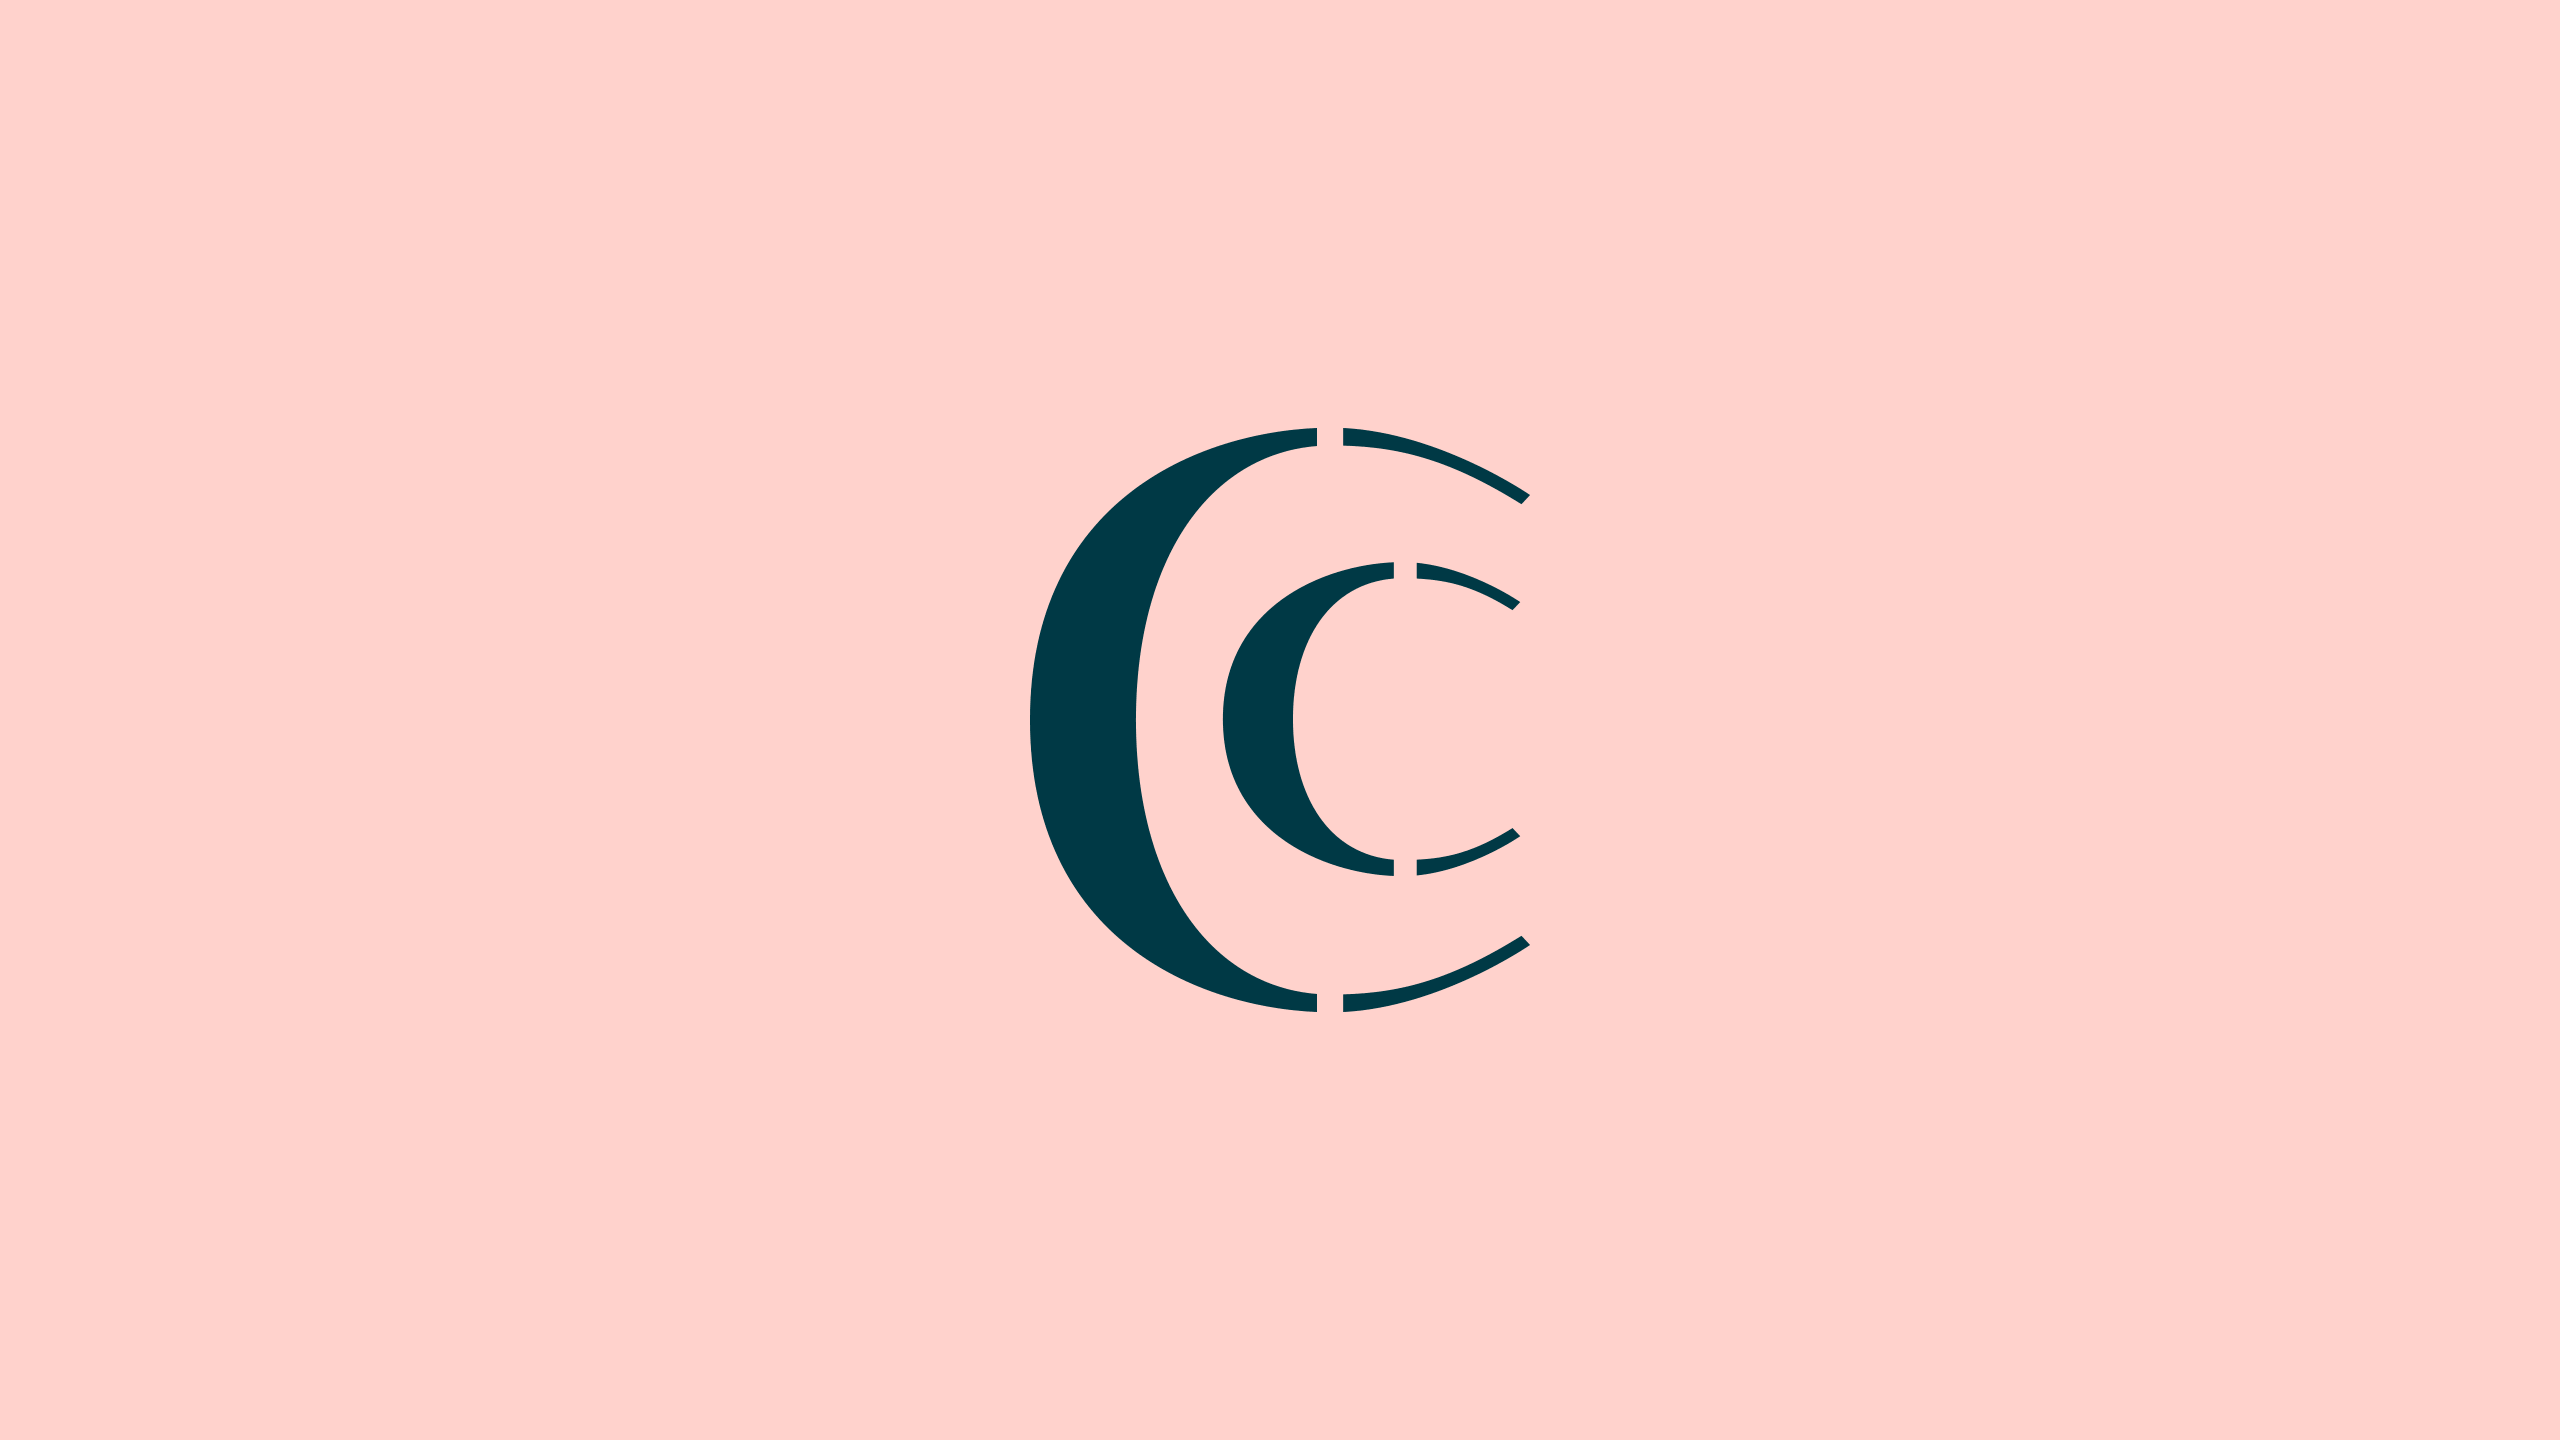 CC initials